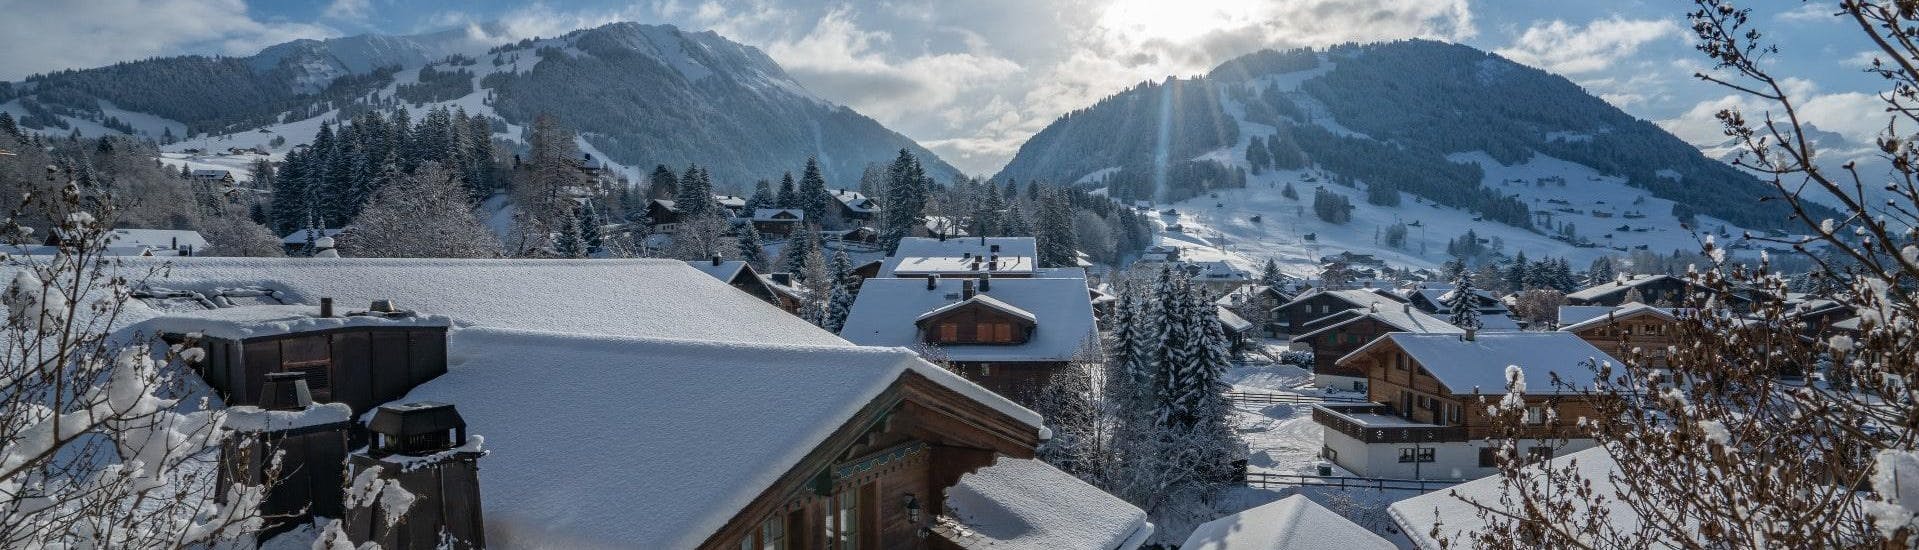 Vue sur le village enneigé de Gstaad dans les Alpes suisses, un endroit populaire où les skieurs peuvent réserver des cours de ski auprès d'une des écoles de ski locales.